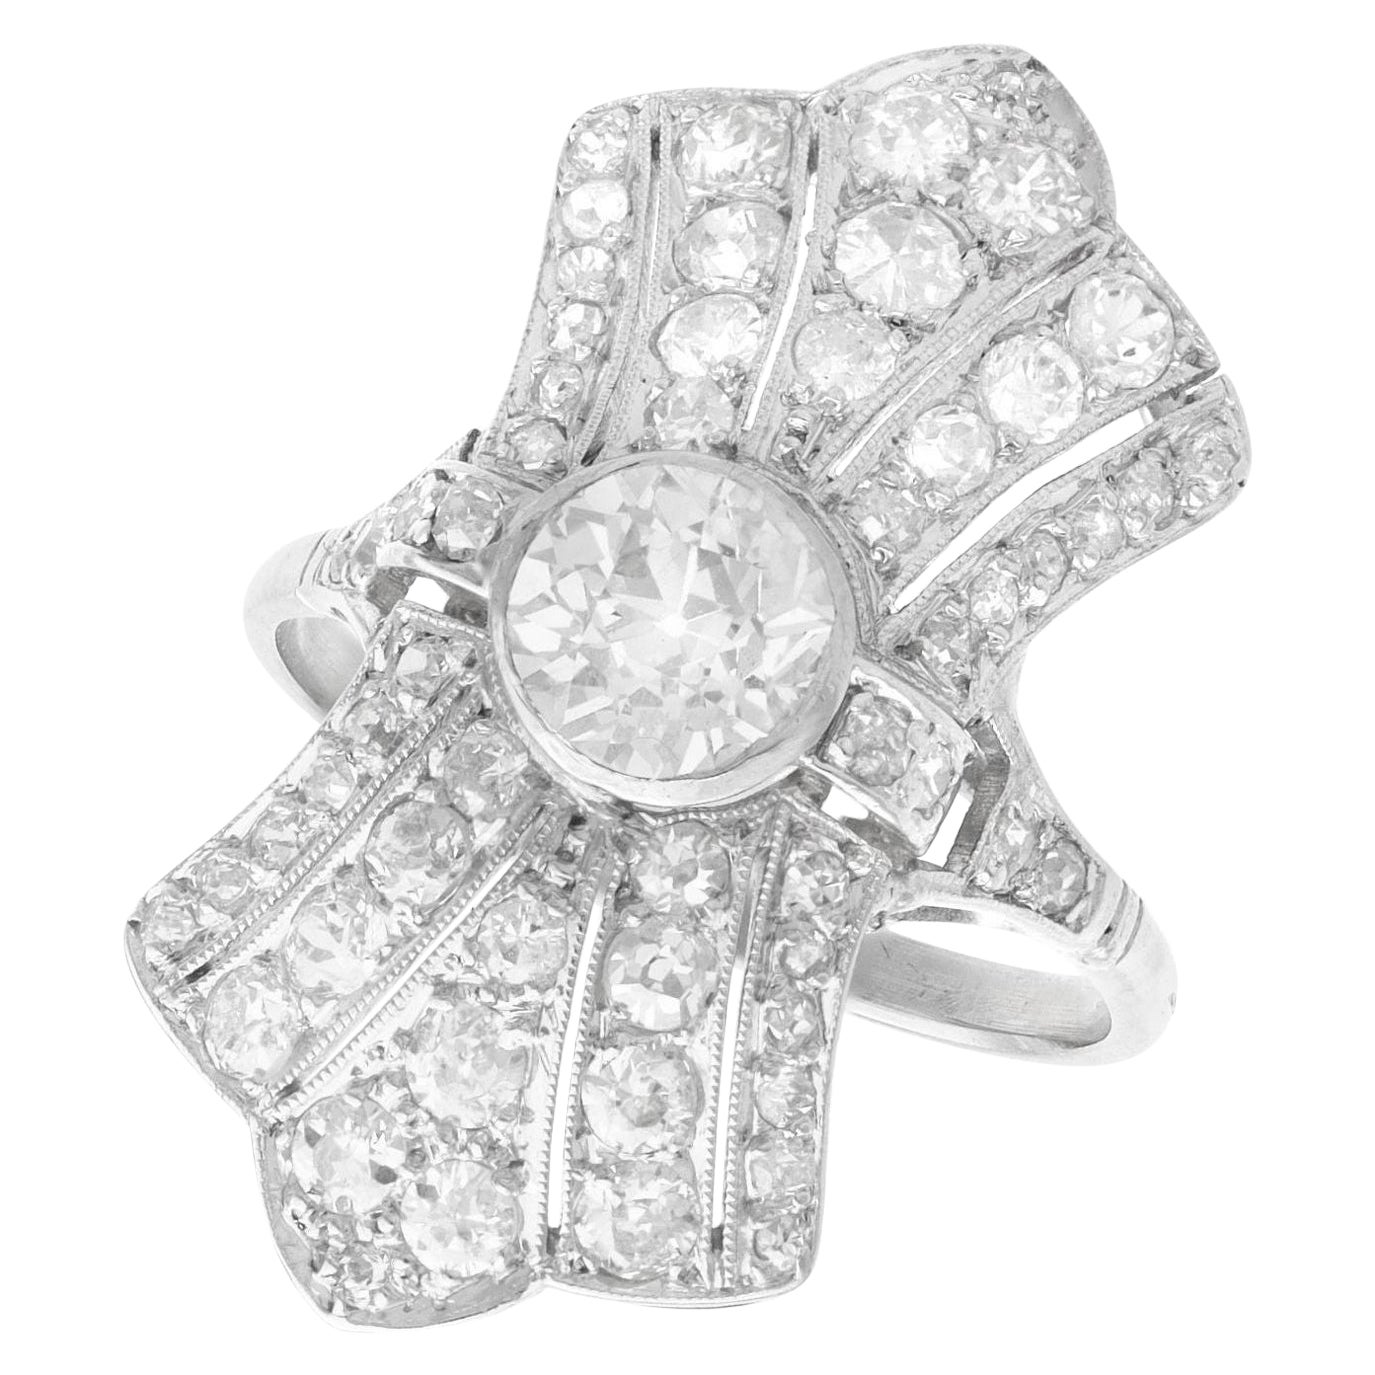 Antique Art Deco 2.88 Carat Diamond and Platinum Dress Ring